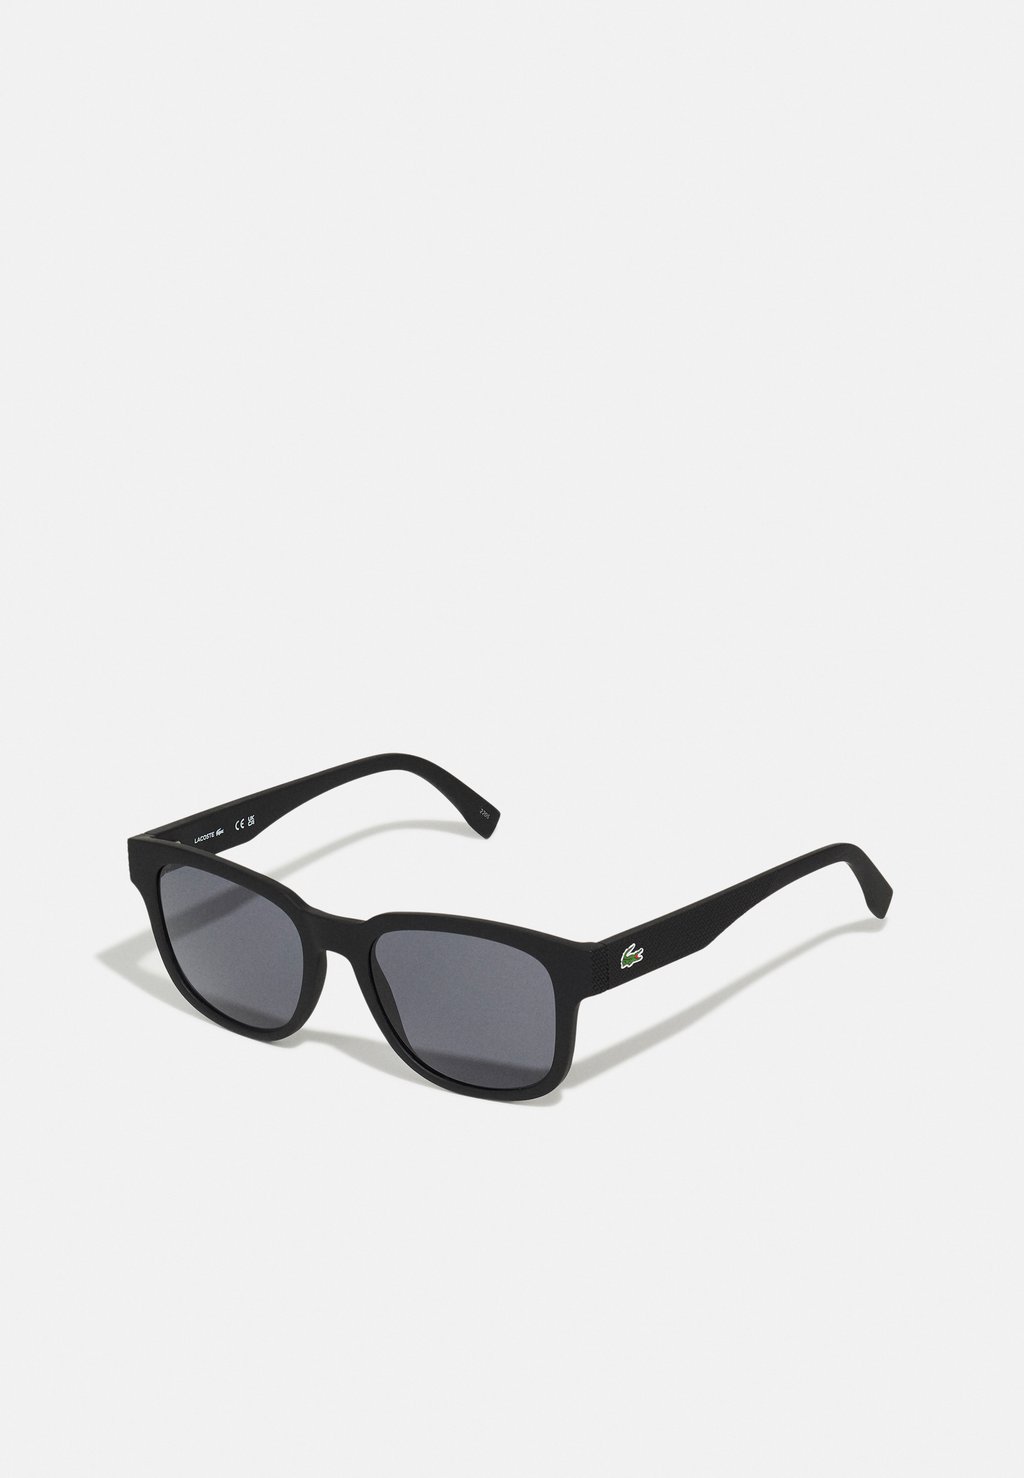 Солнцезащитные очки УНИСЕКС Lacoste, матовый черный